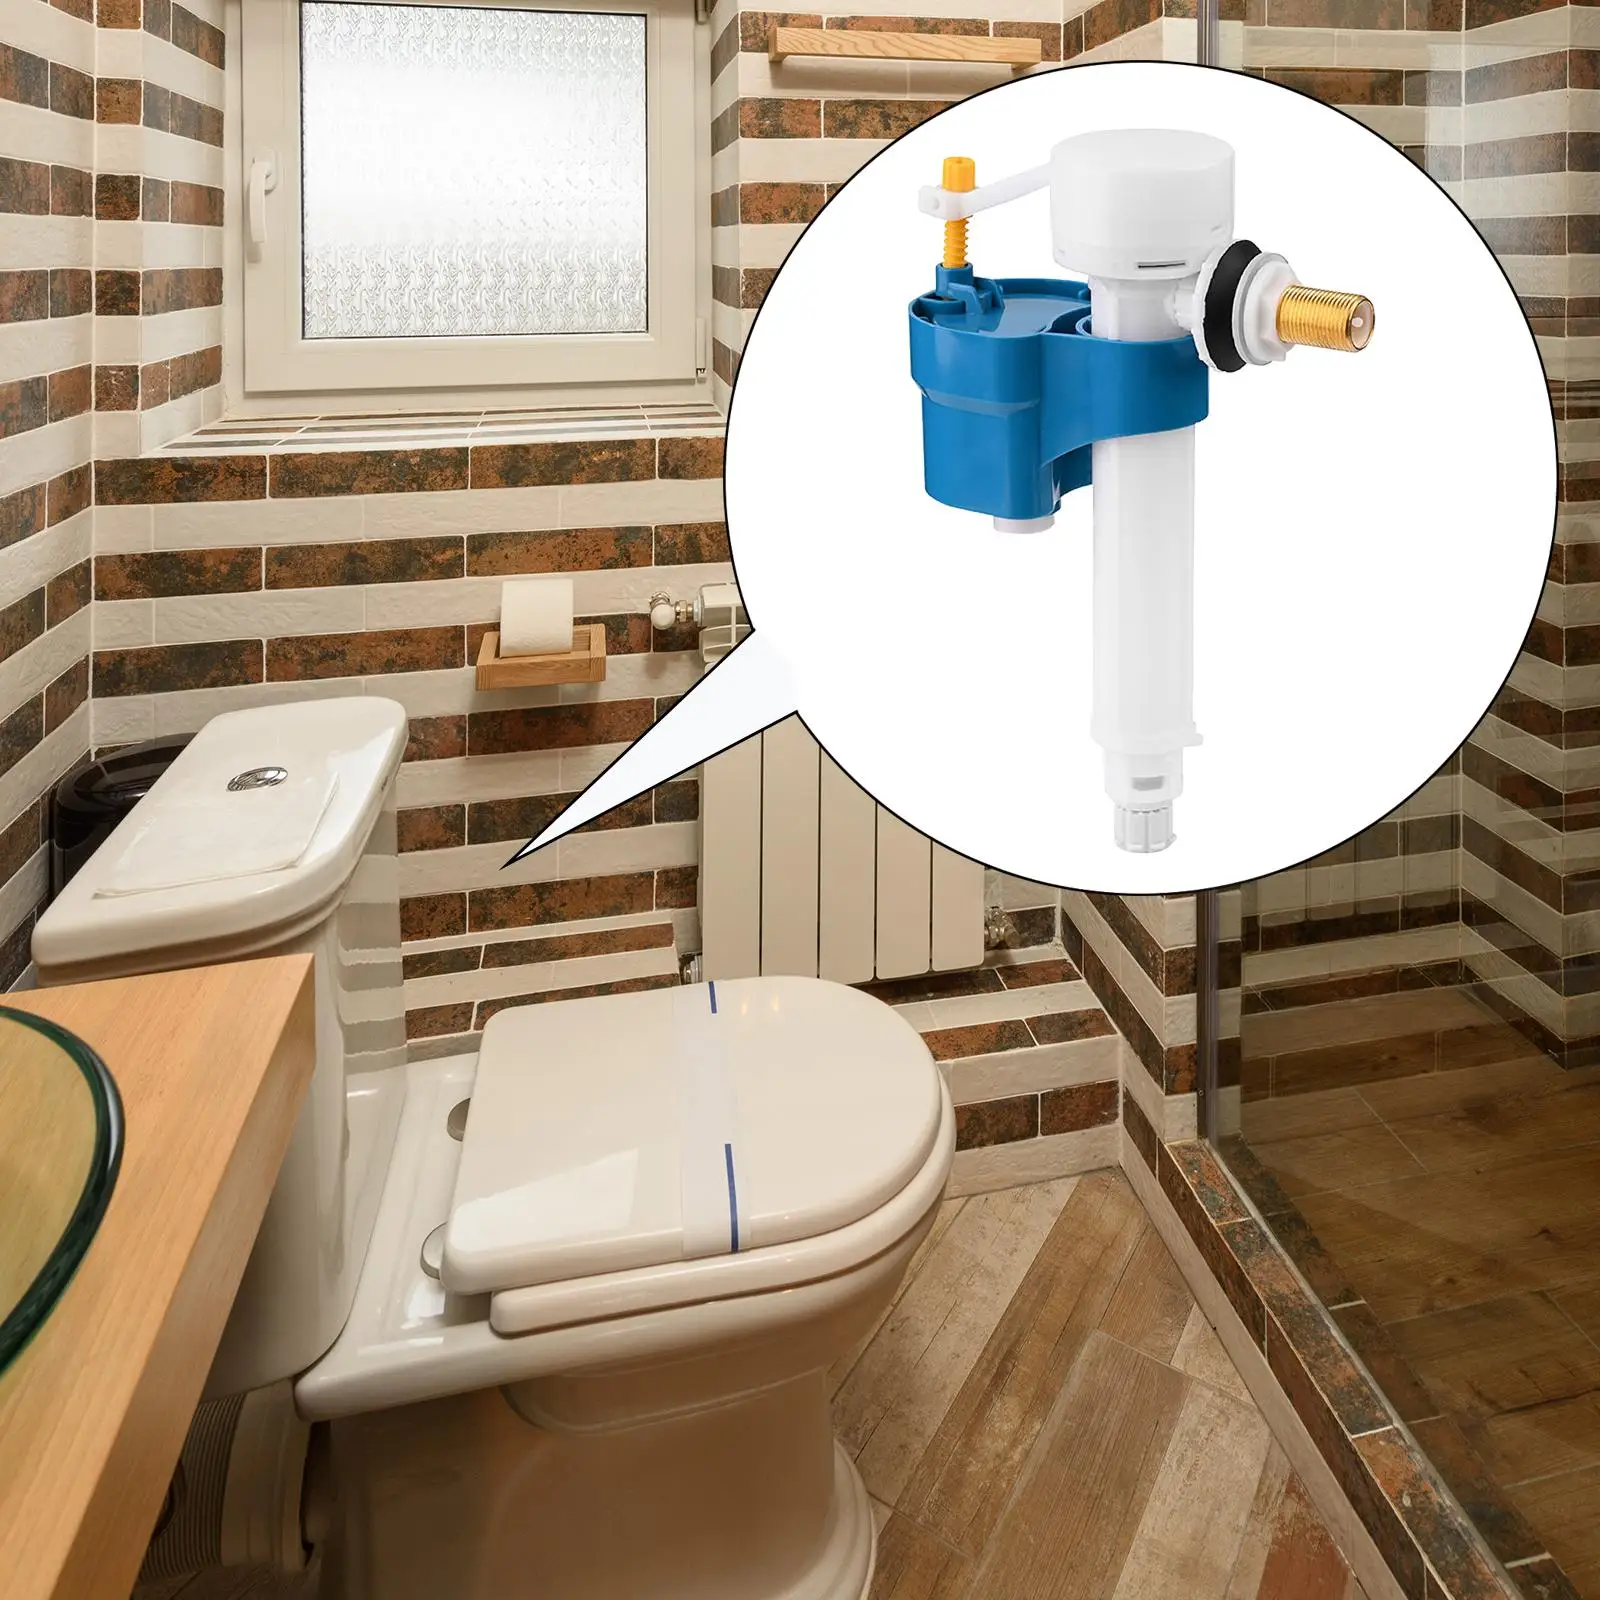 Toilet Flush s Brass Shank Horizontal Inlet for Toilet Tanks